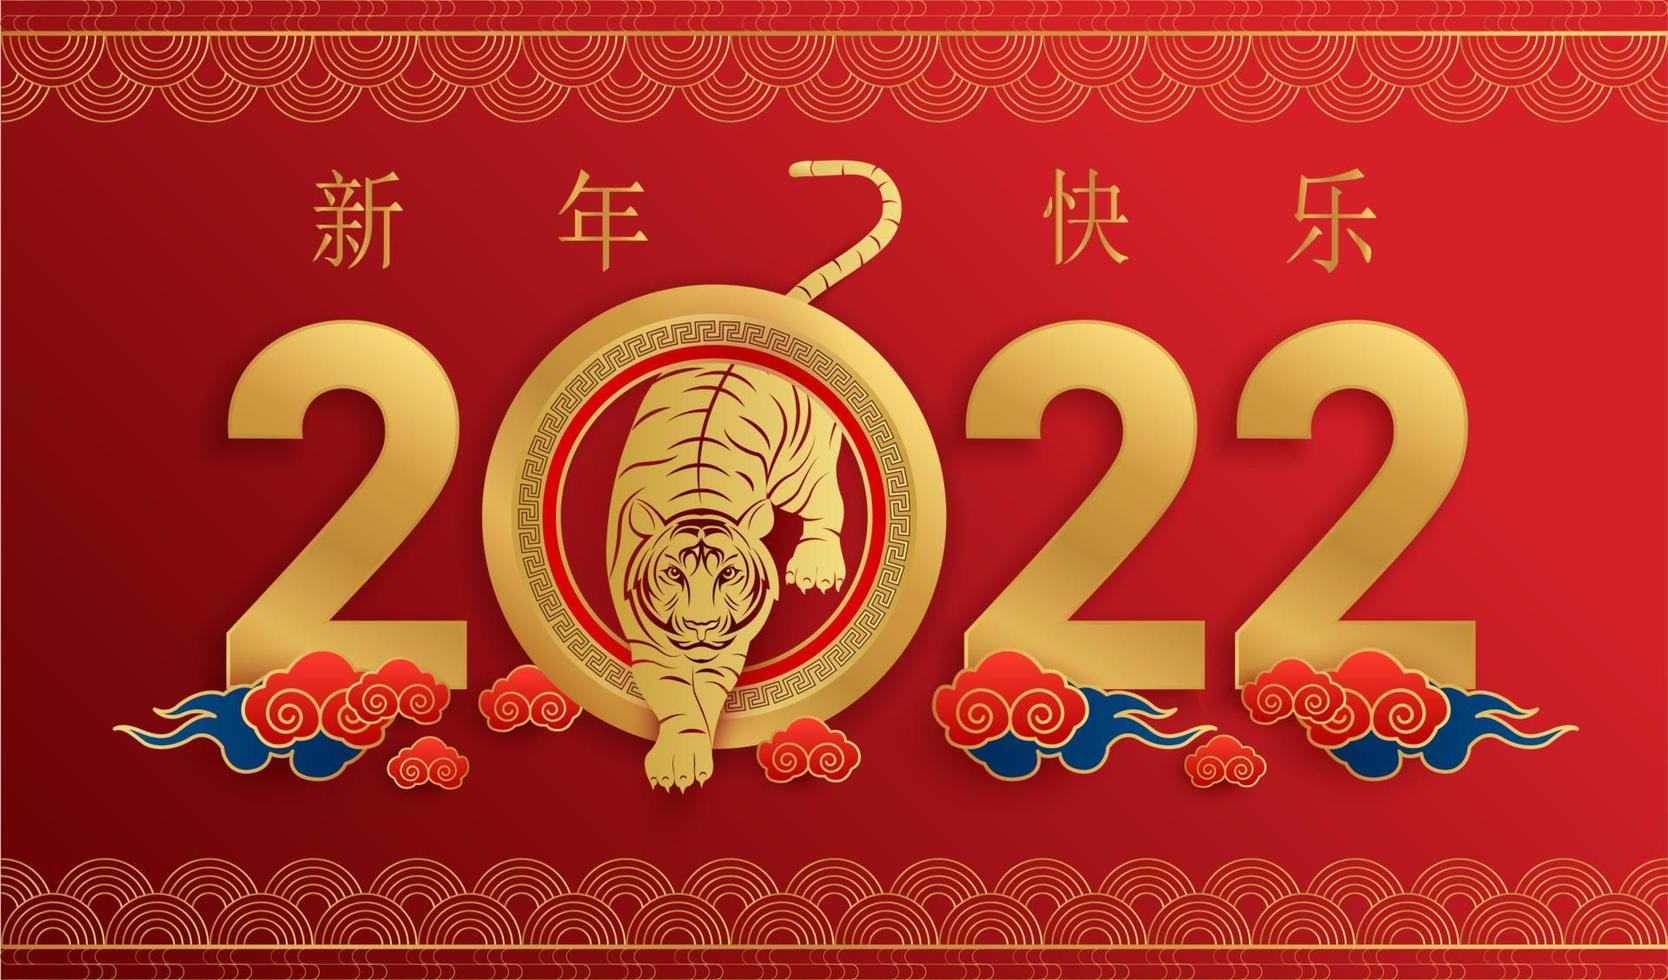 Feliz año nuevo chino 2022, signo del zodíaco tigre sobre fondo de color rojo. elementos asiáticos con estilo de corte de papel de tigre artesanal. traducción al chino feliz año nuevo 2022, año del tigre vector eps10.